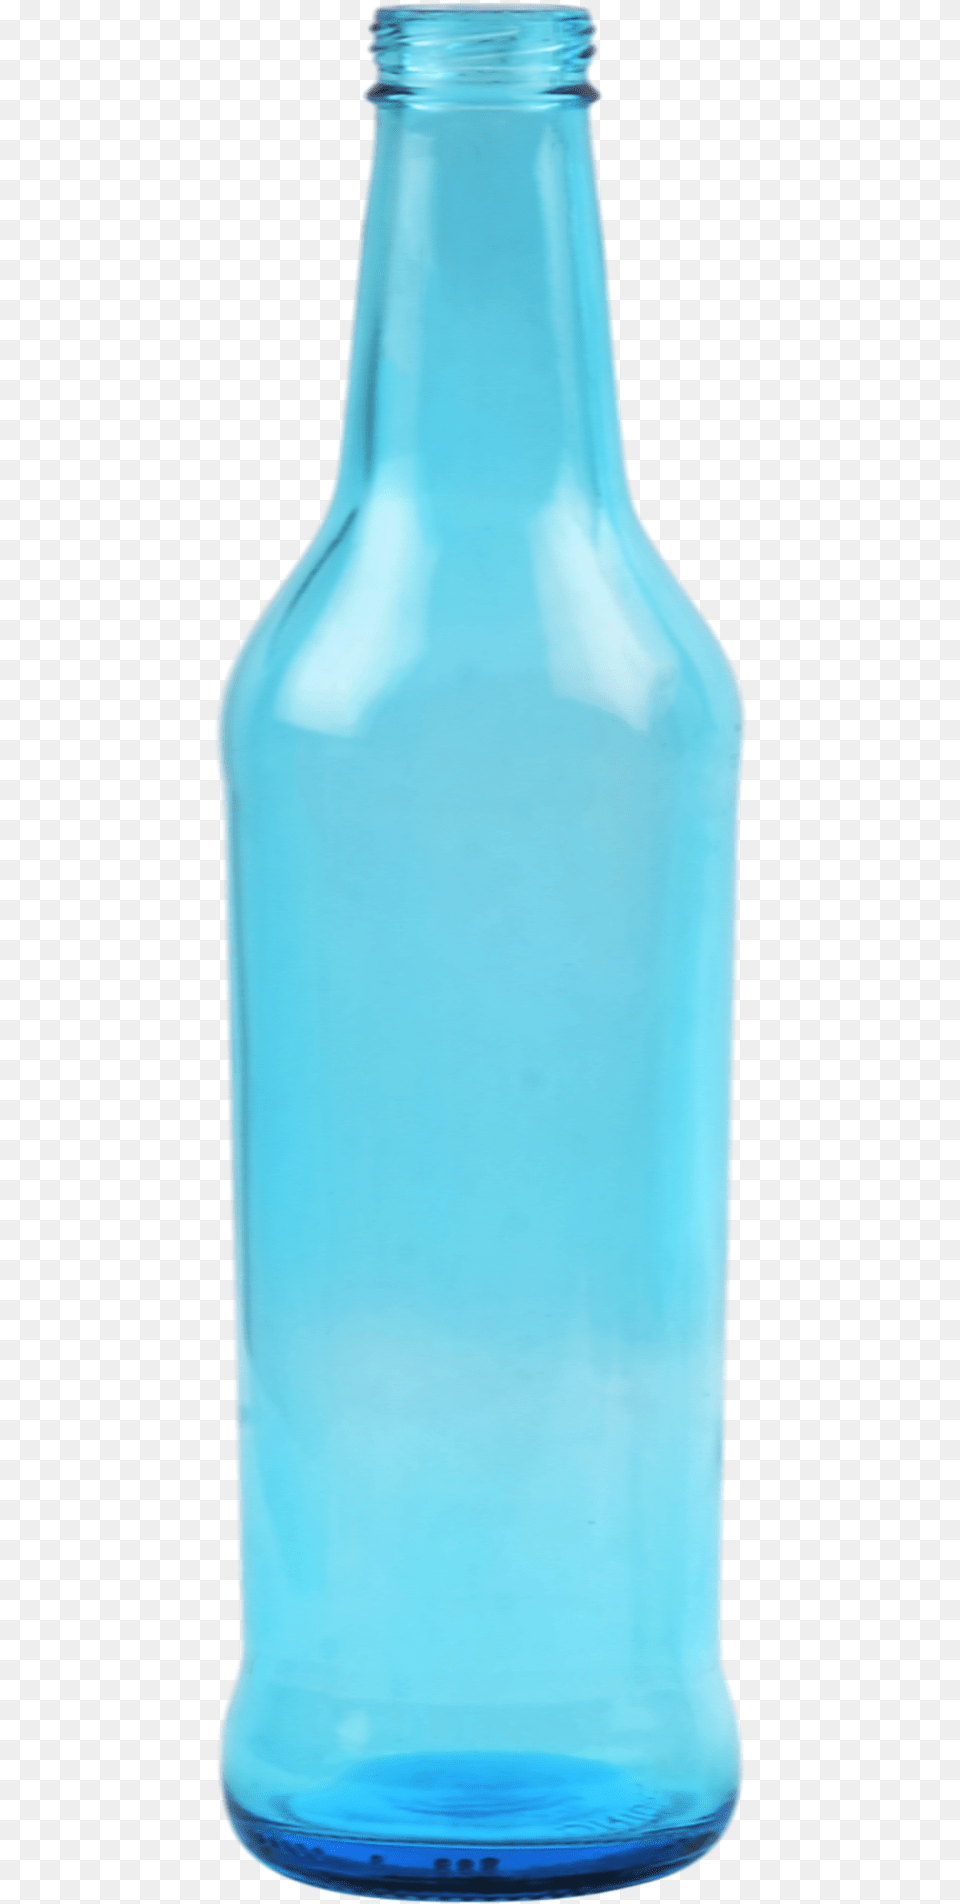 Glass Bottle, Jar, Alcohol, Beer, Beverage Free Png Download